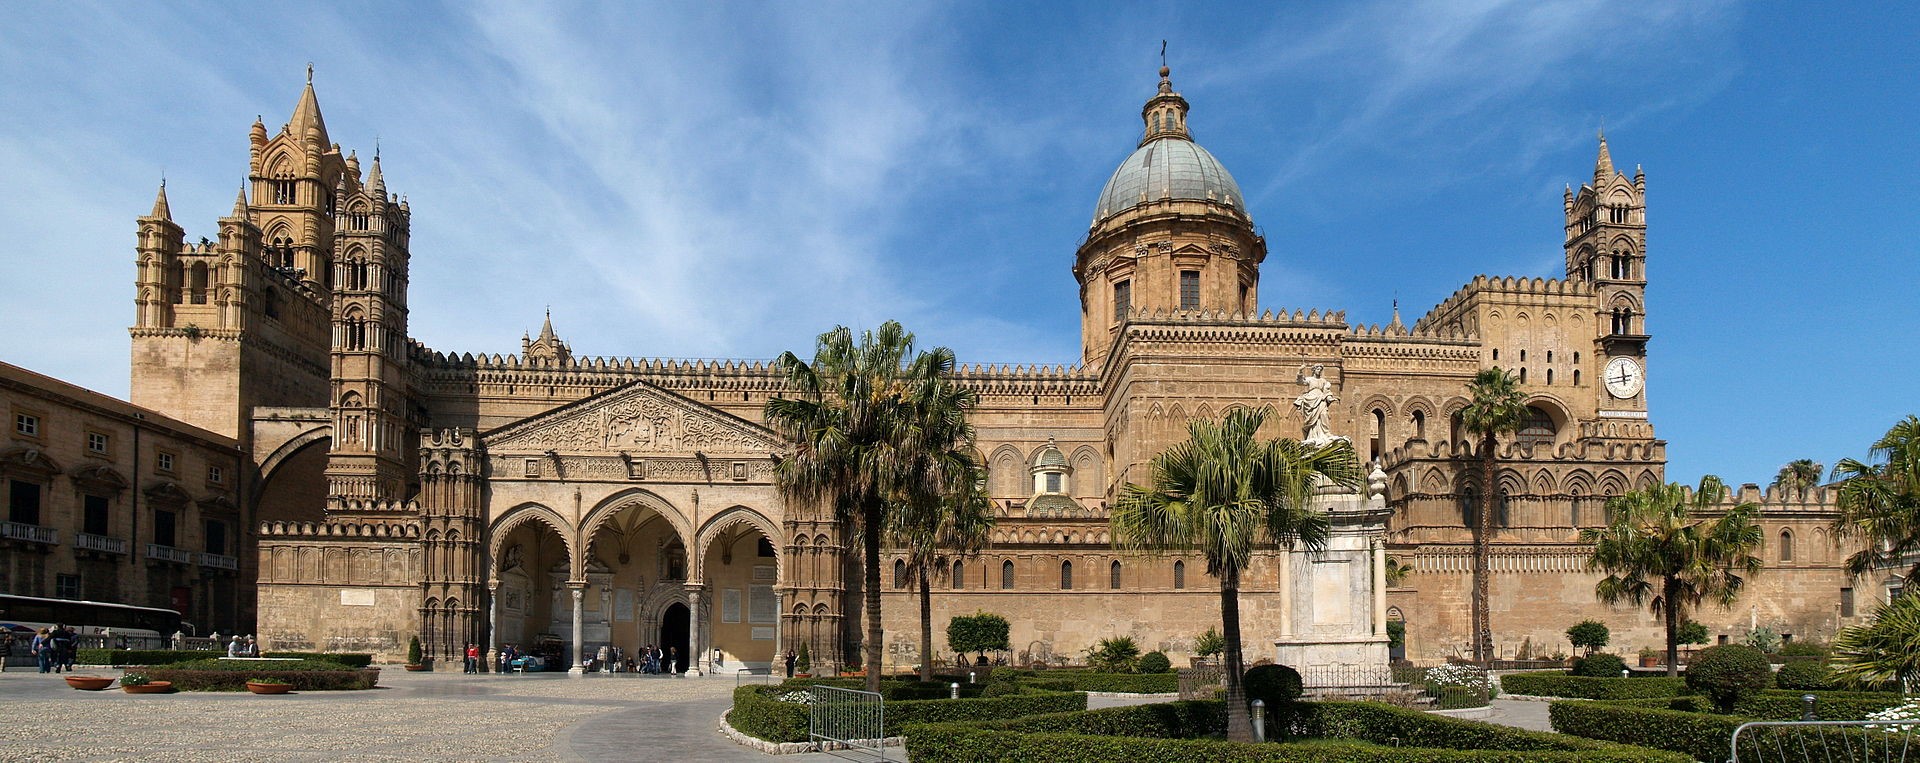 Palermo - katedrala